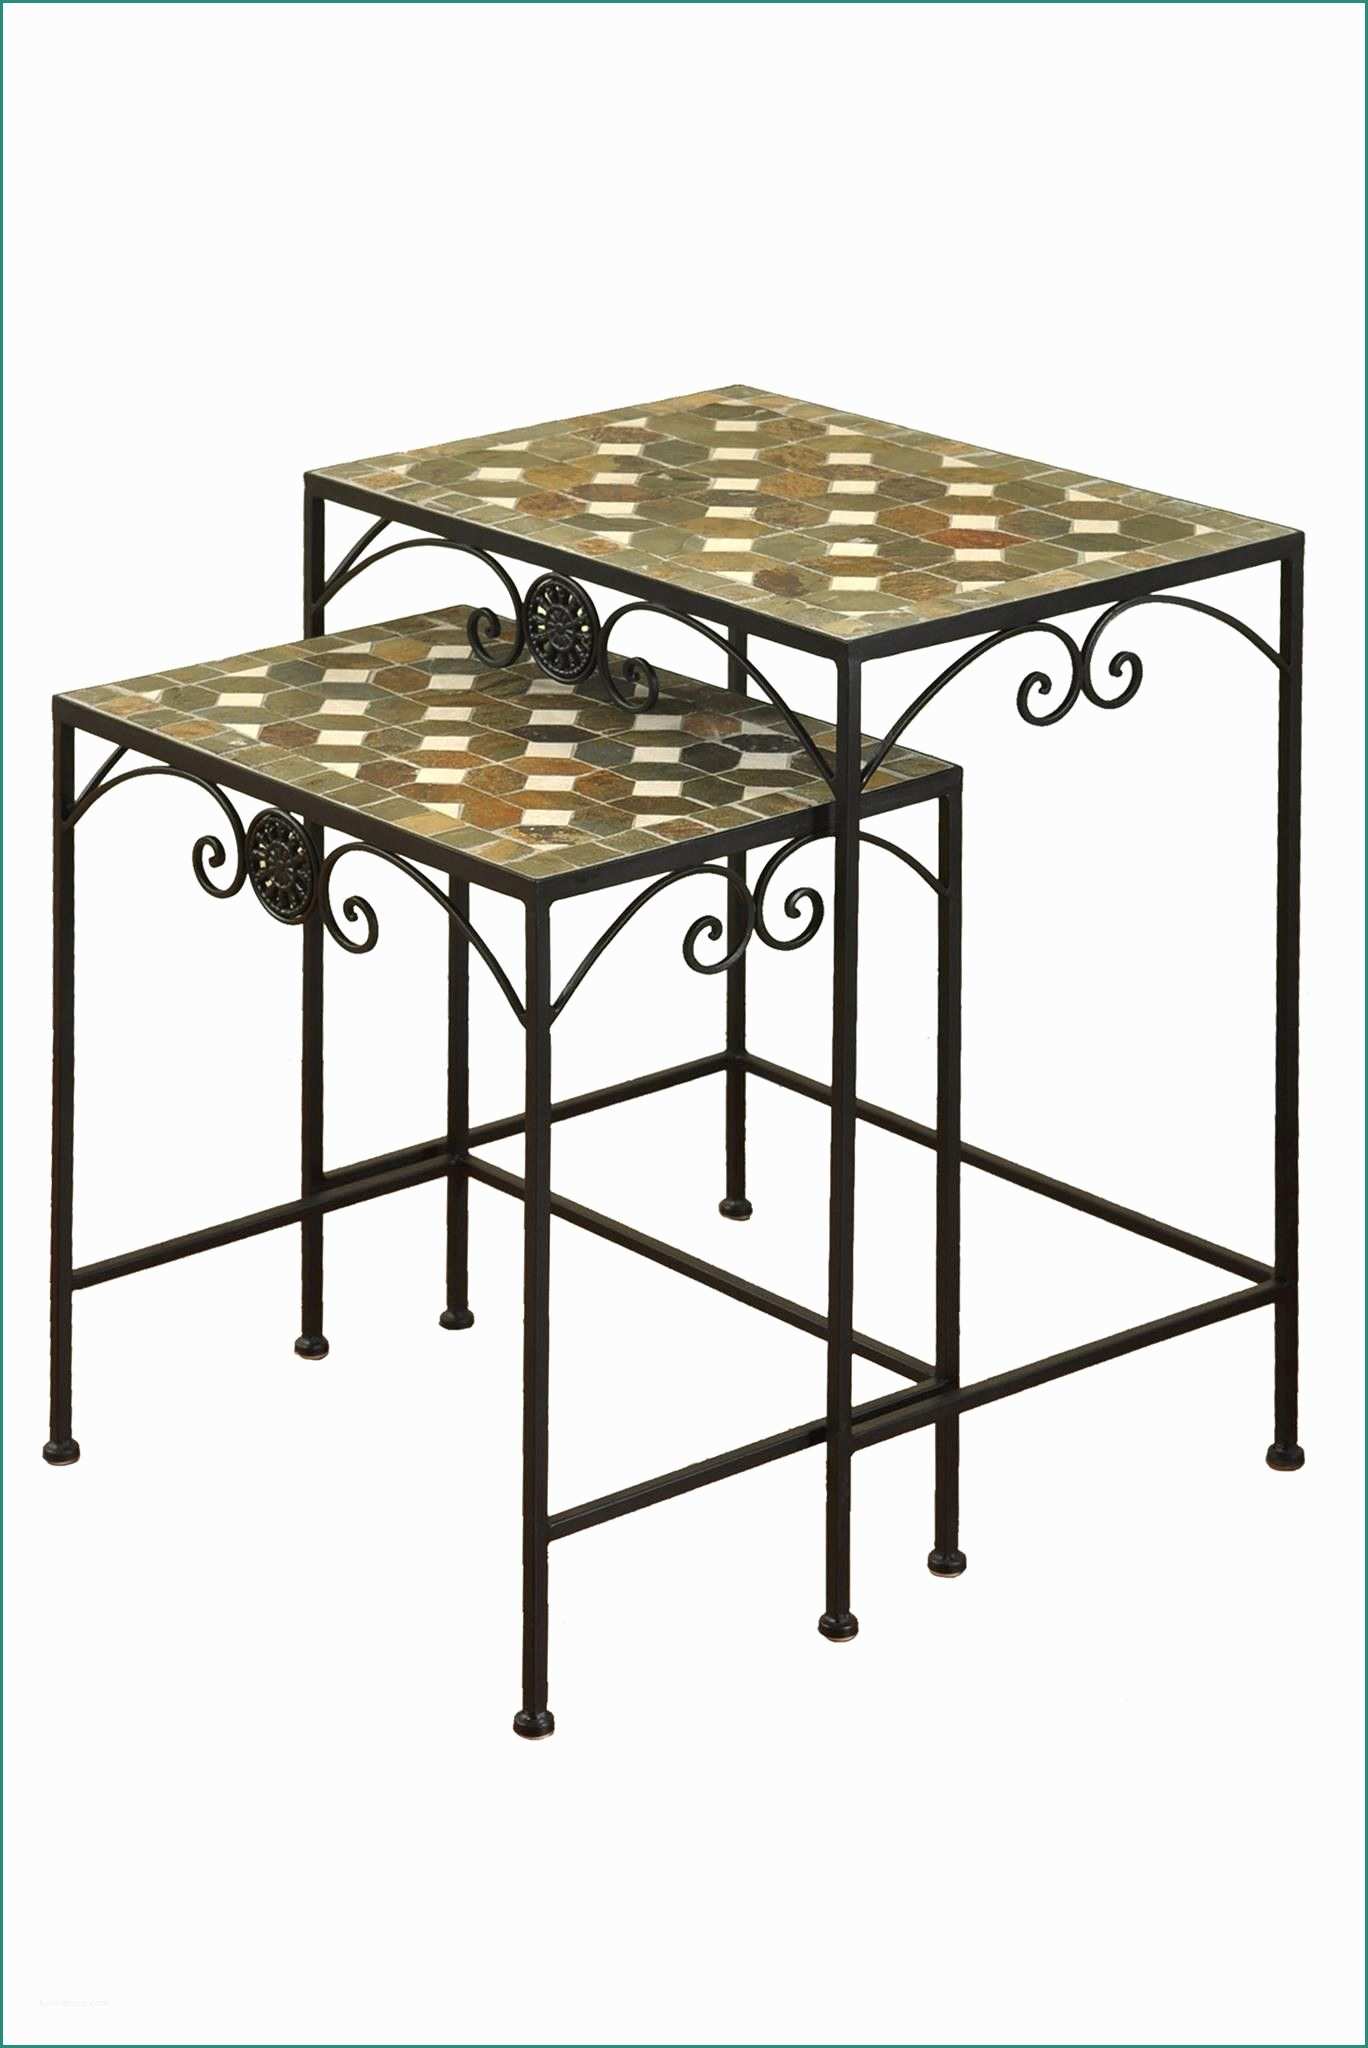 Sedie Da Giardino In Ferro E Nesting Tables with Stone Mosaic tops Project